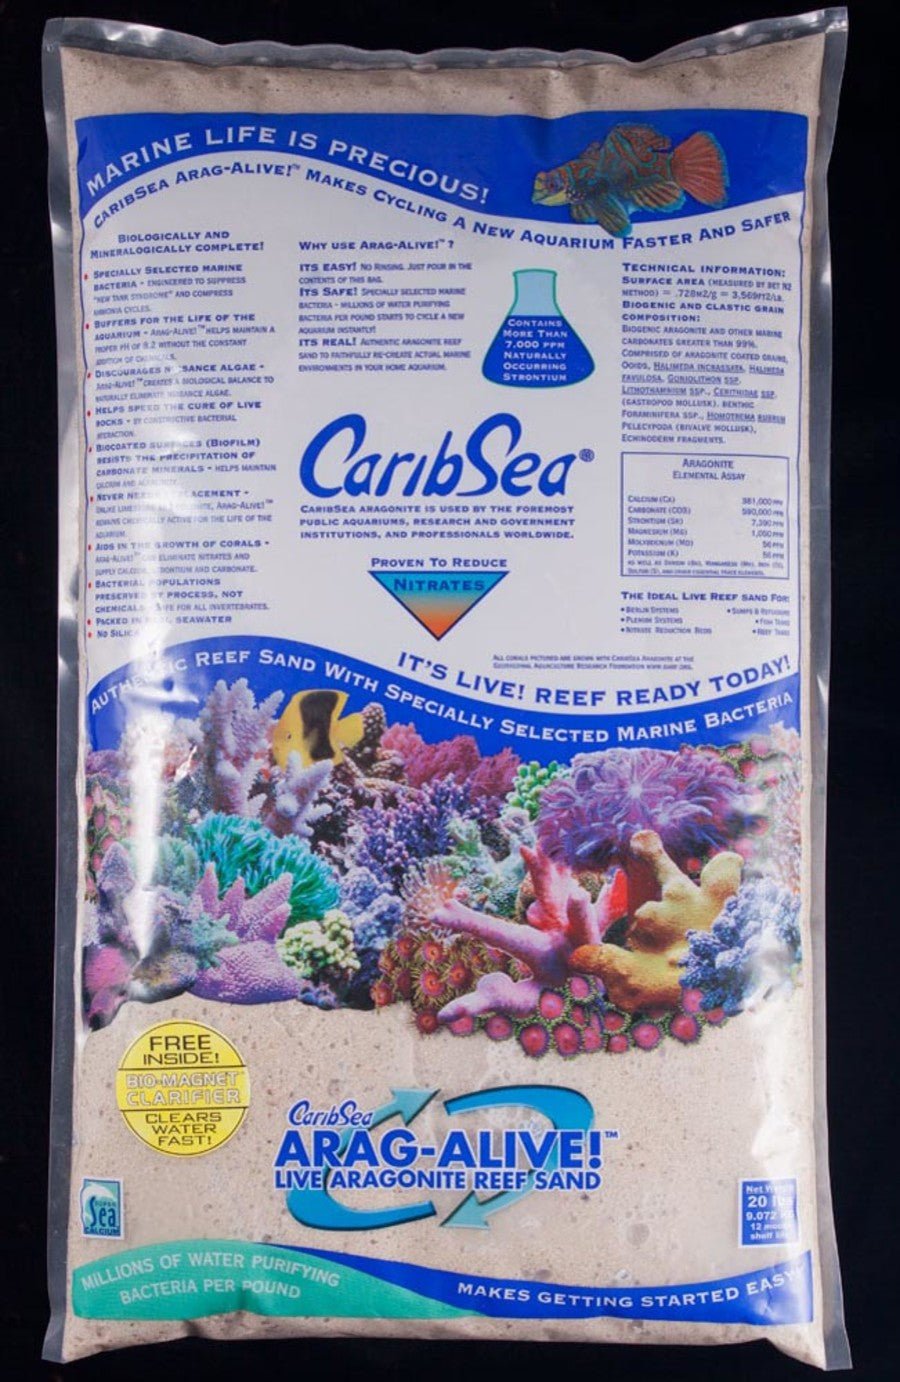 CaribSea Arag-Alive, Aquarium Sand - Keepin' it Reef